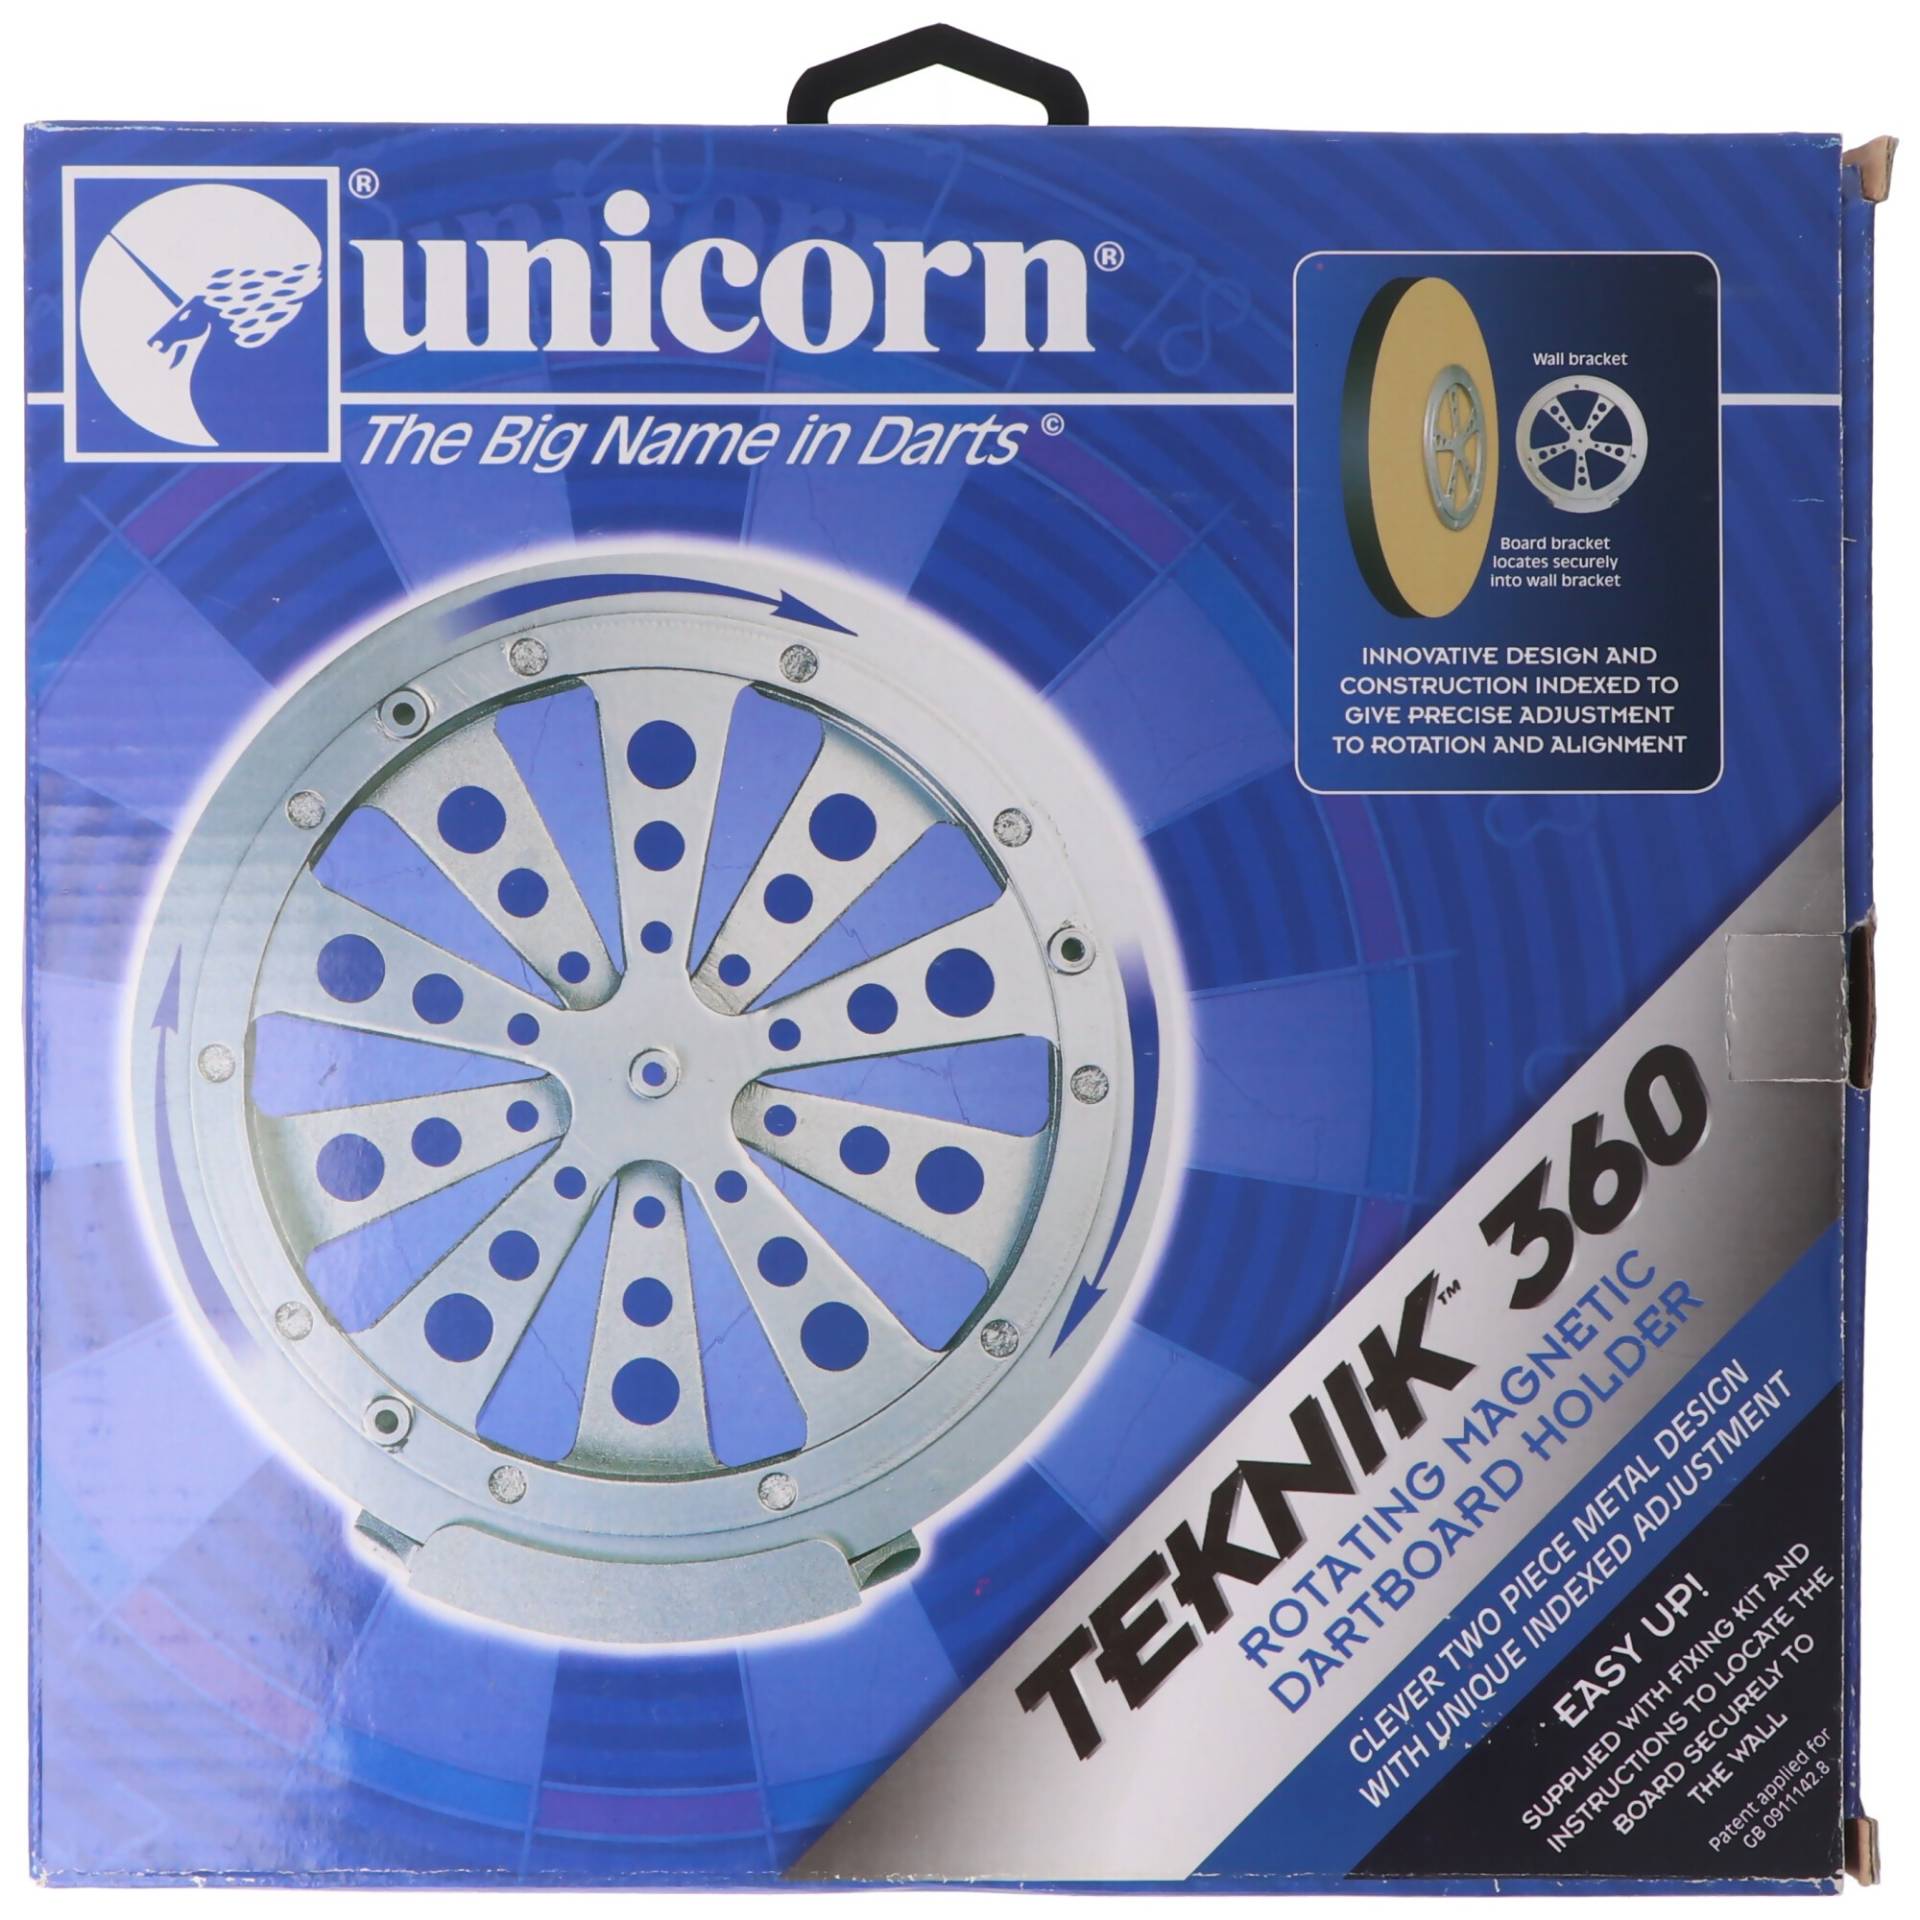 Teknik 360 magnetischer Dartboard Halter von Unicorn